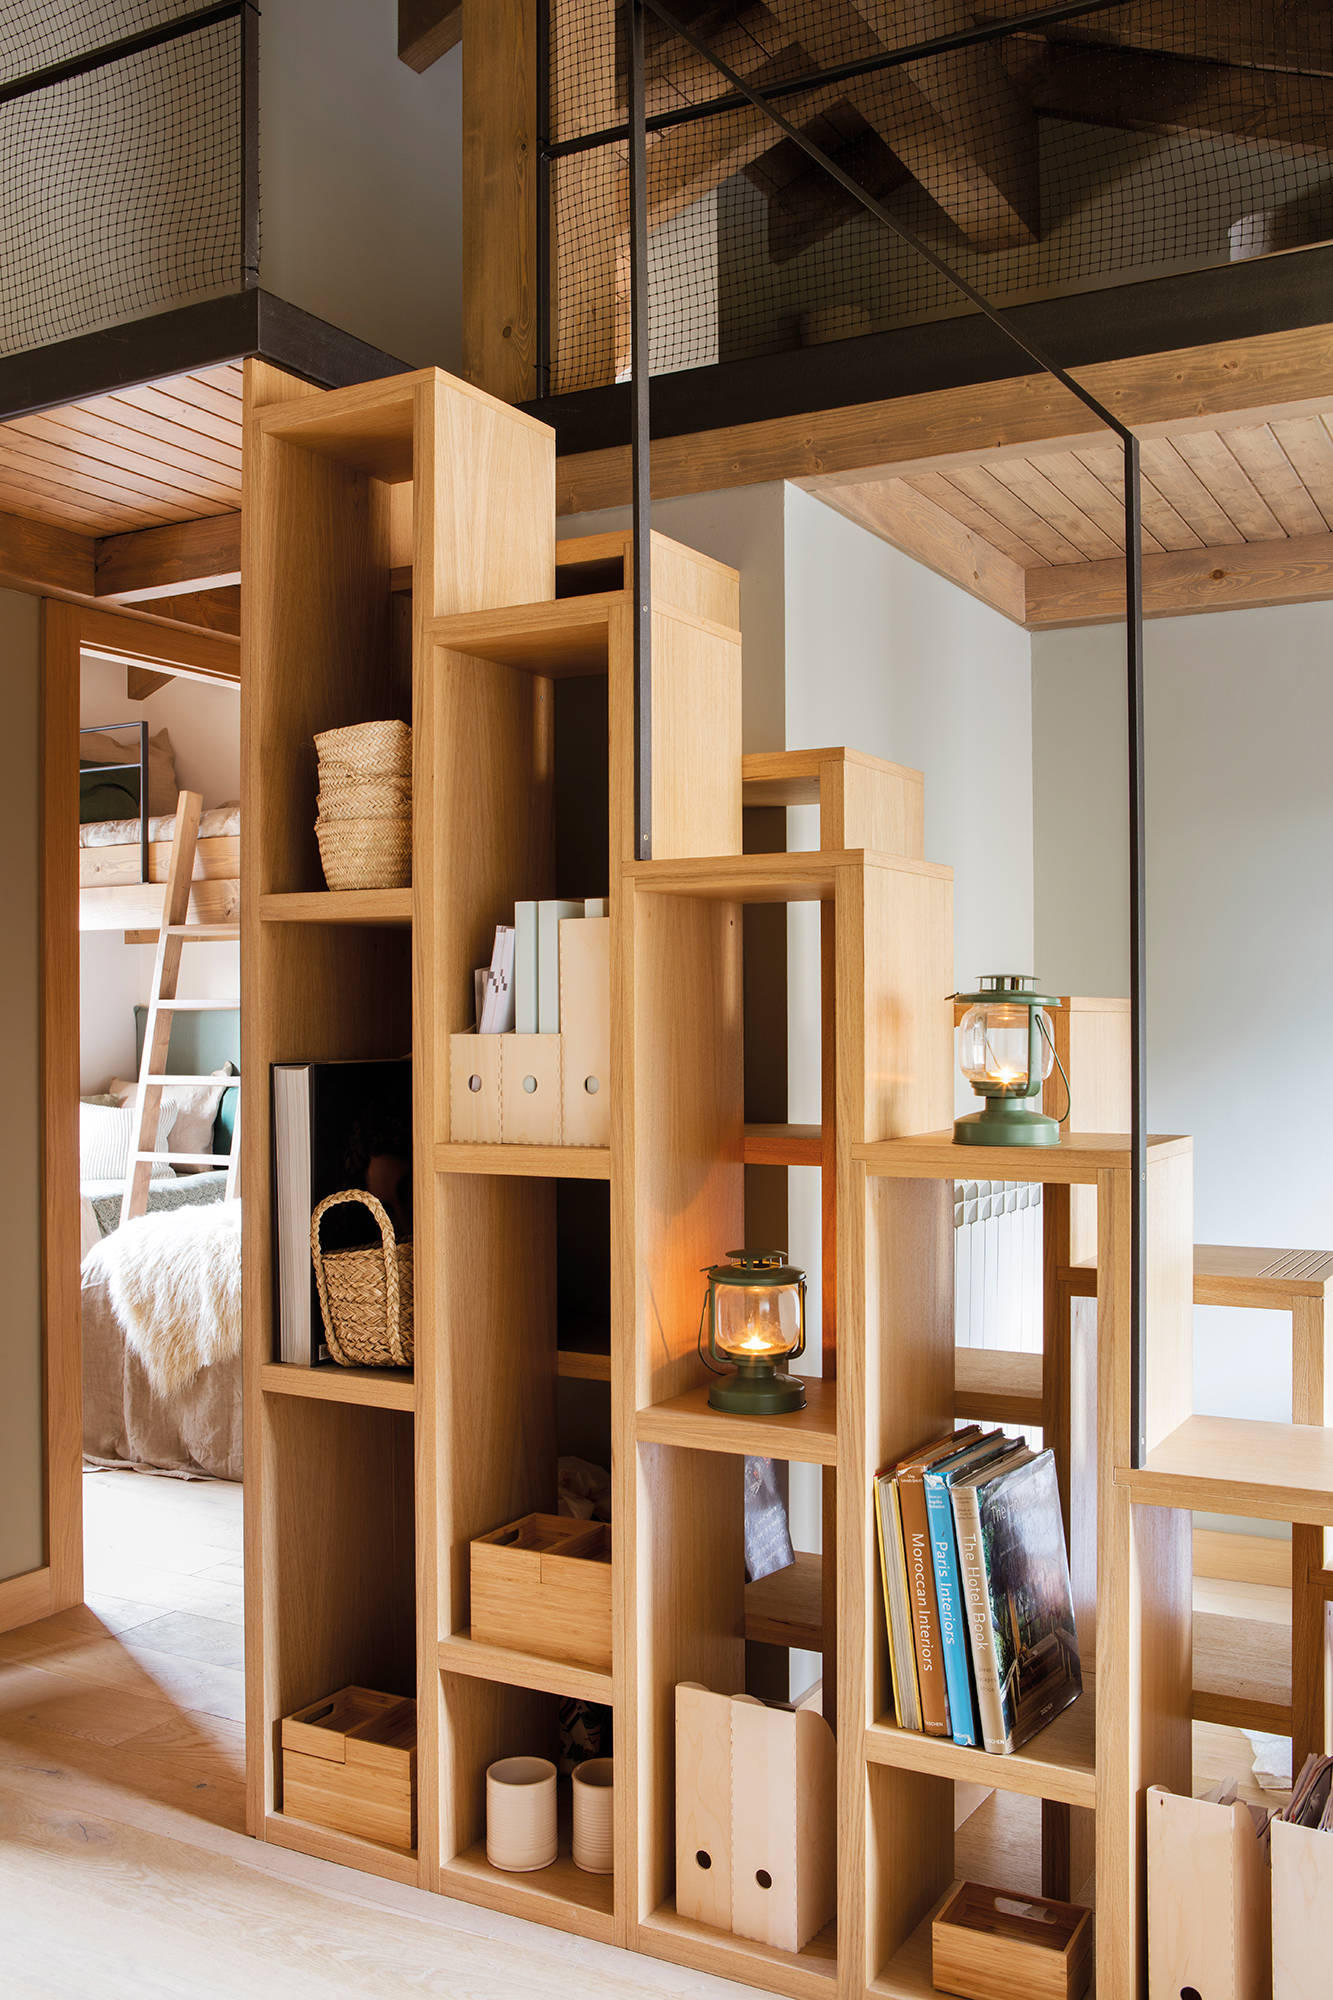 Escalera diseñada con estantes abiertos en madera